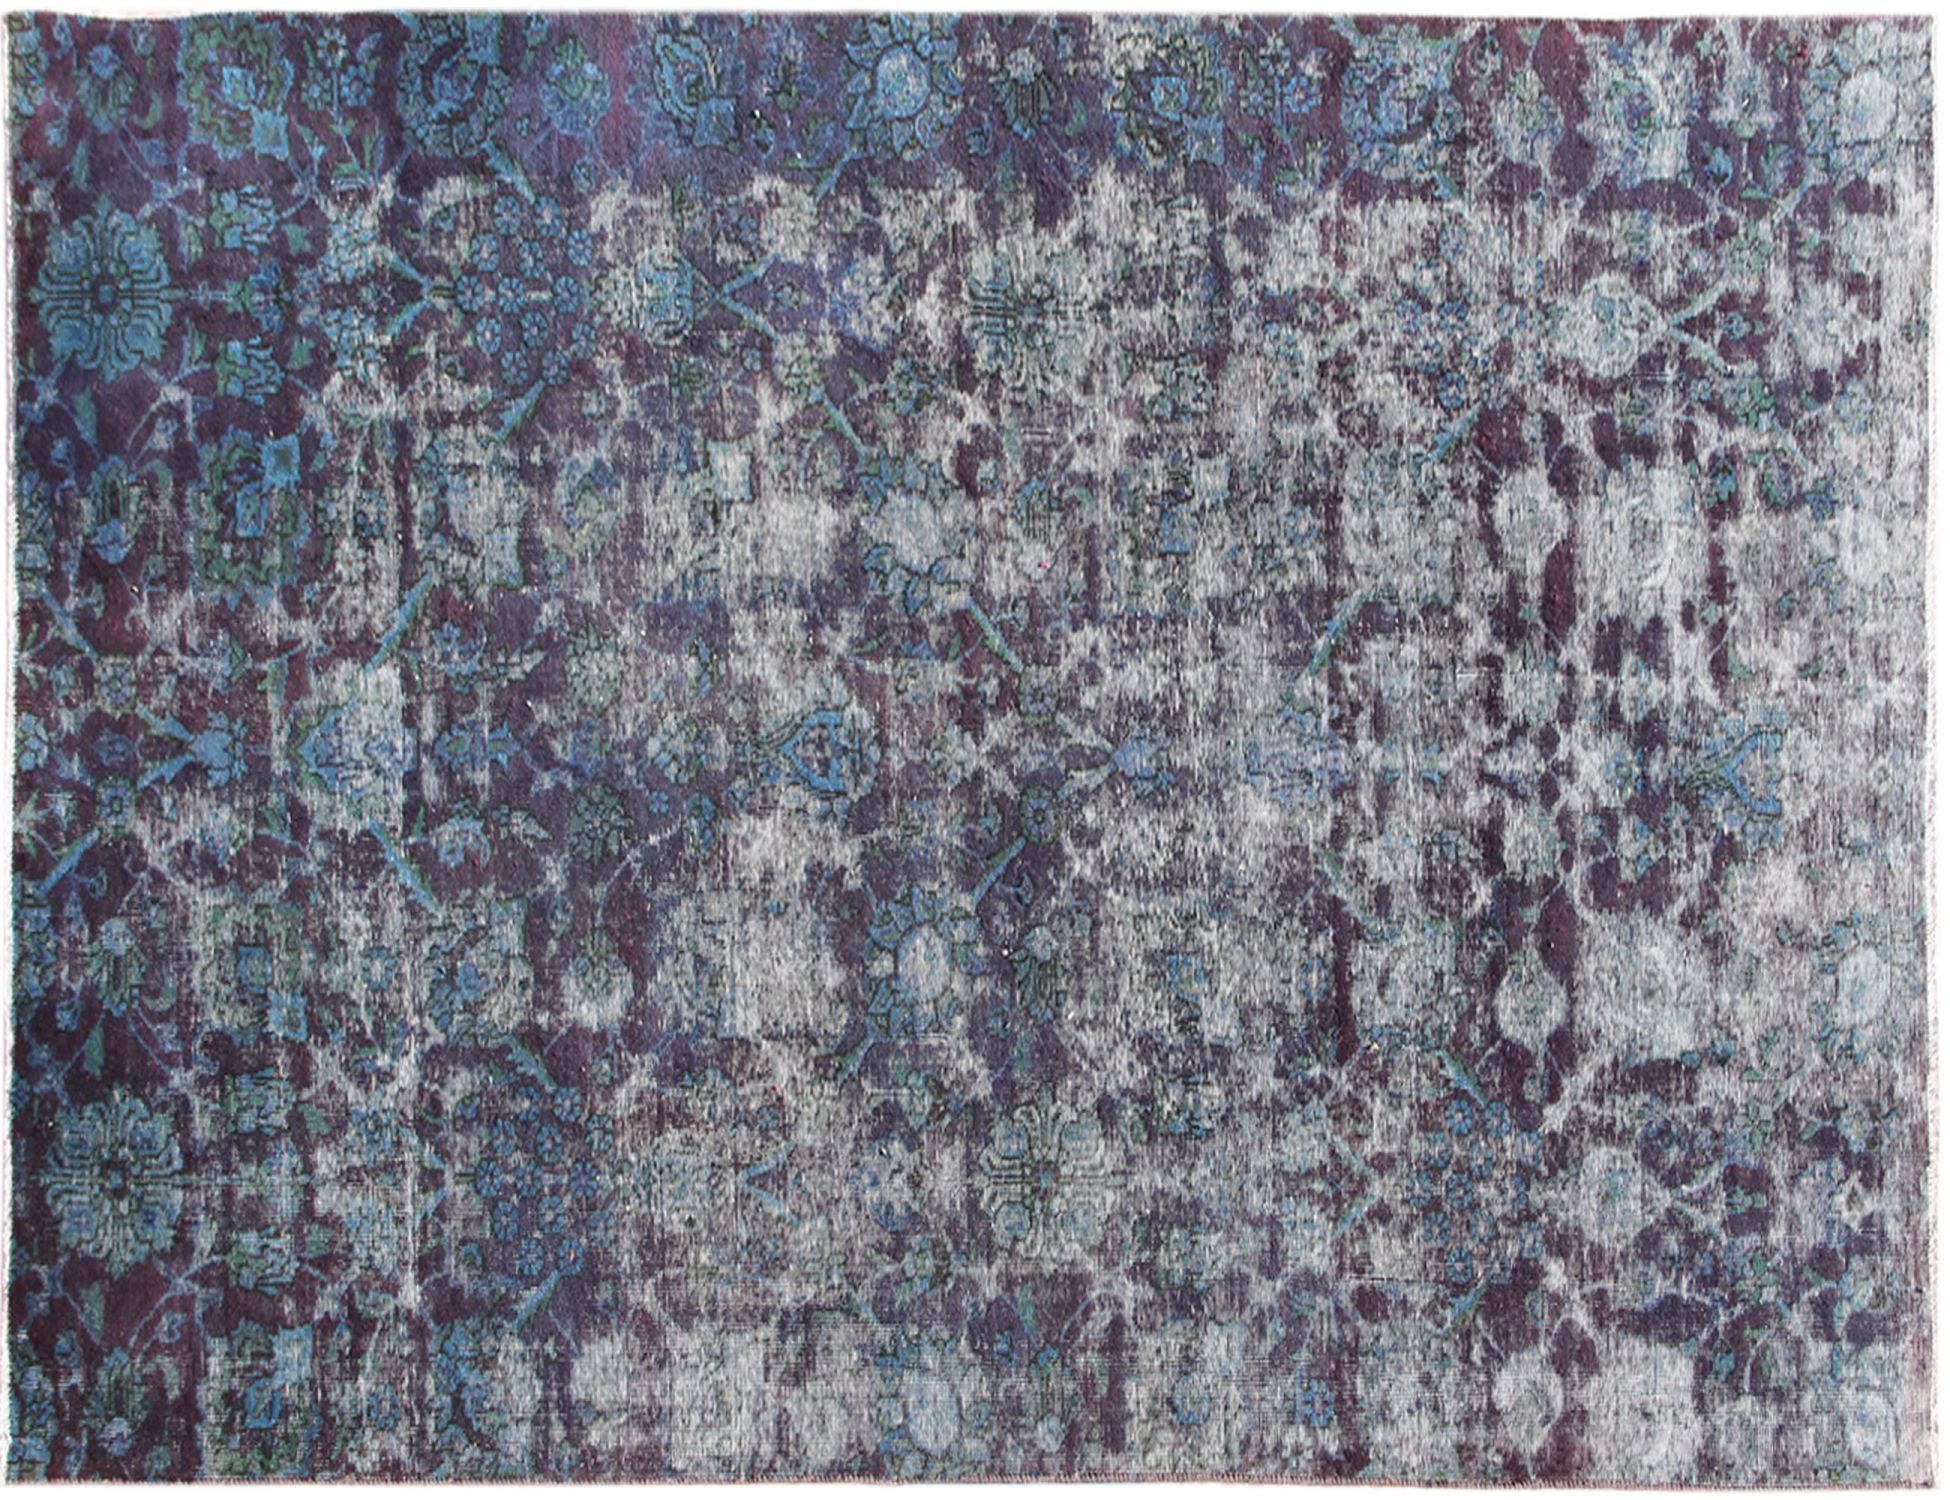 Persischer Vintage Teppich  blau <br/>343 x 200 cm